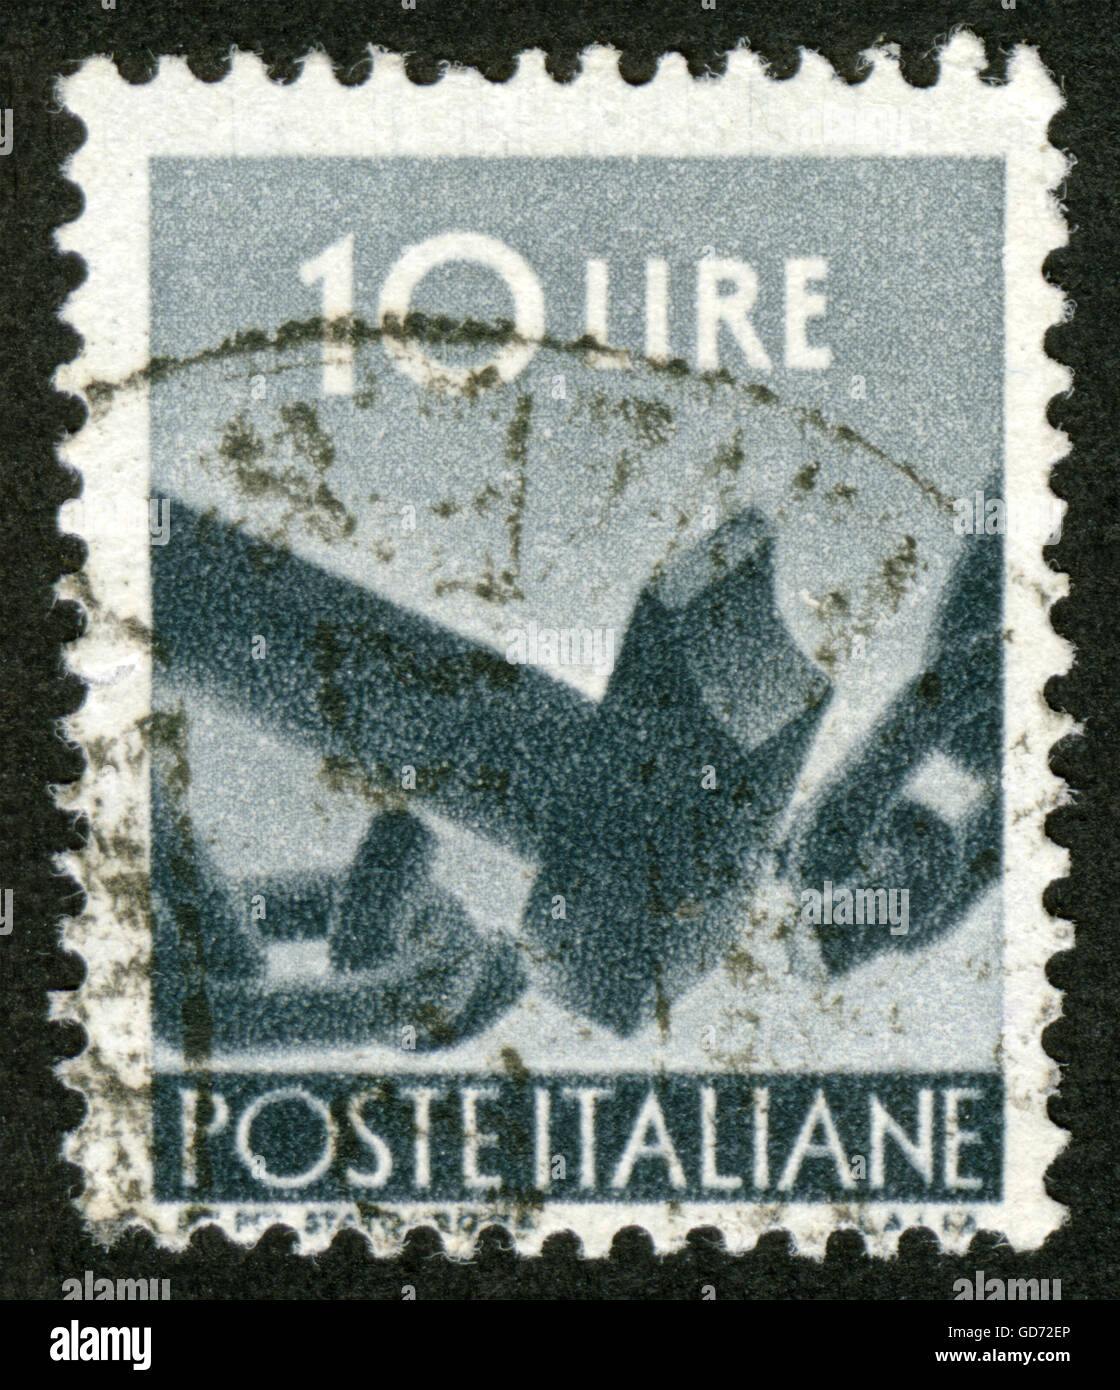 Italie timbre, Hammer chaîne de rupture Banque D'Images